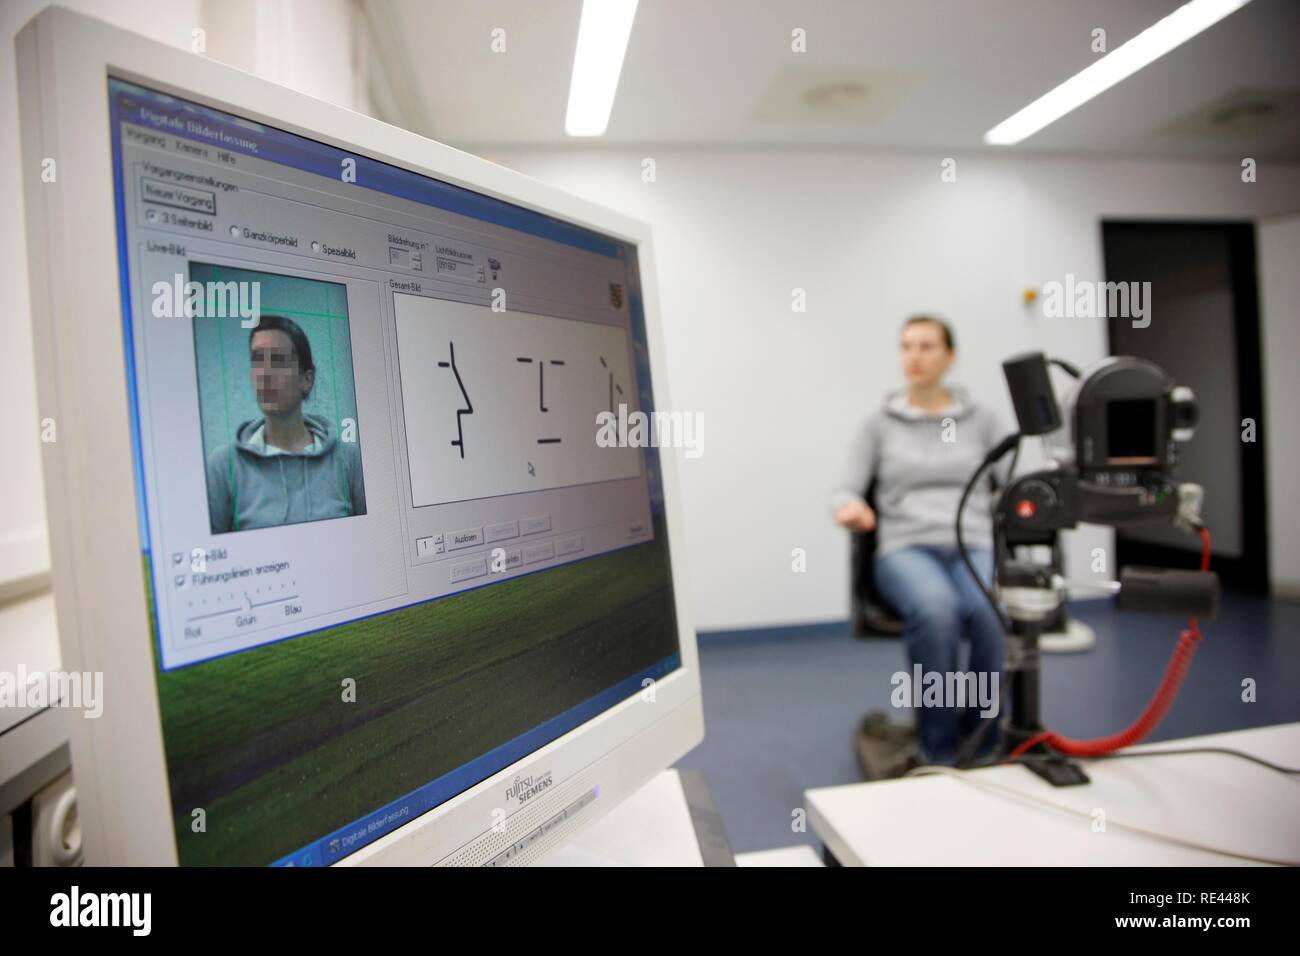 Foto di polizia, dalla fotocamera digitale, per l'identificazione fisica di un sospetto in un'indagine penale nell'indagine penale Foto Stock